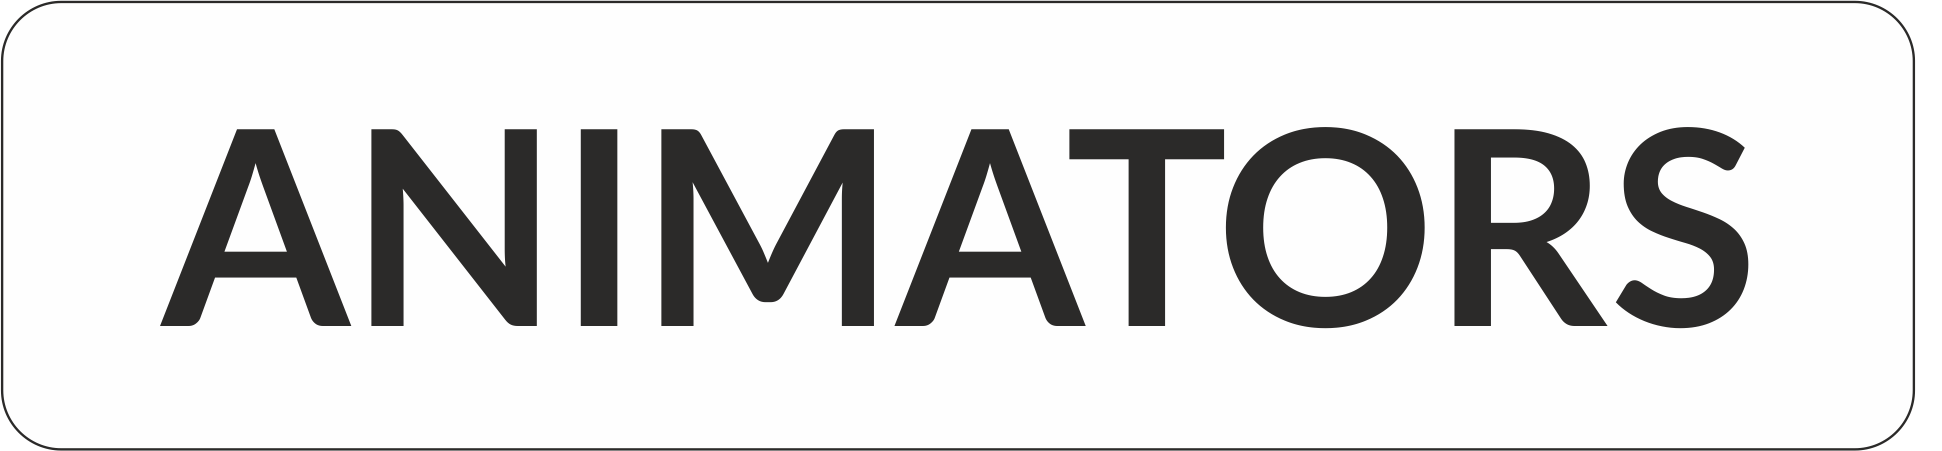 ANIMATORS logo